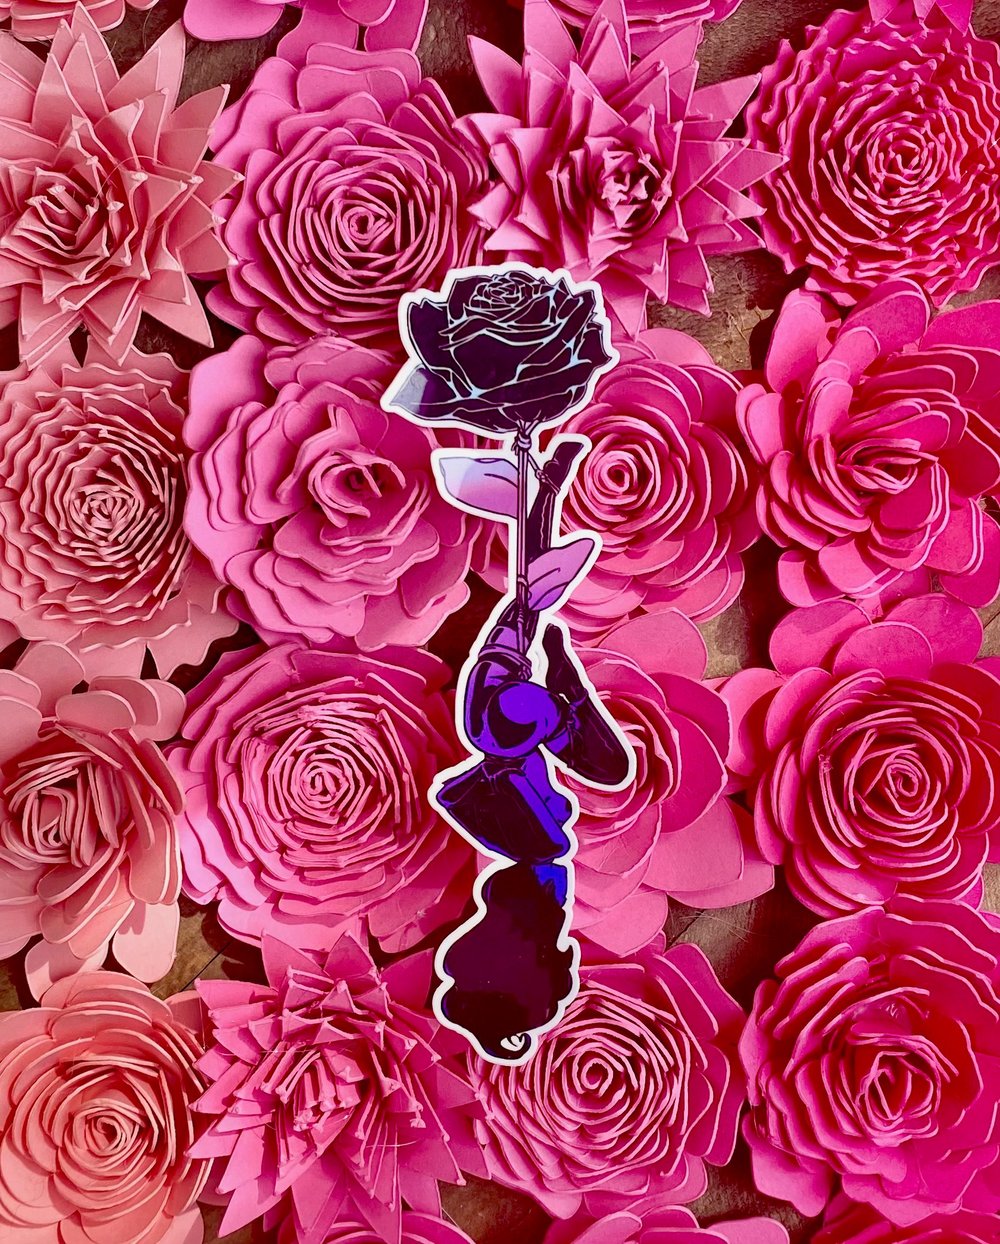 Image of Black rose scandalous rose 